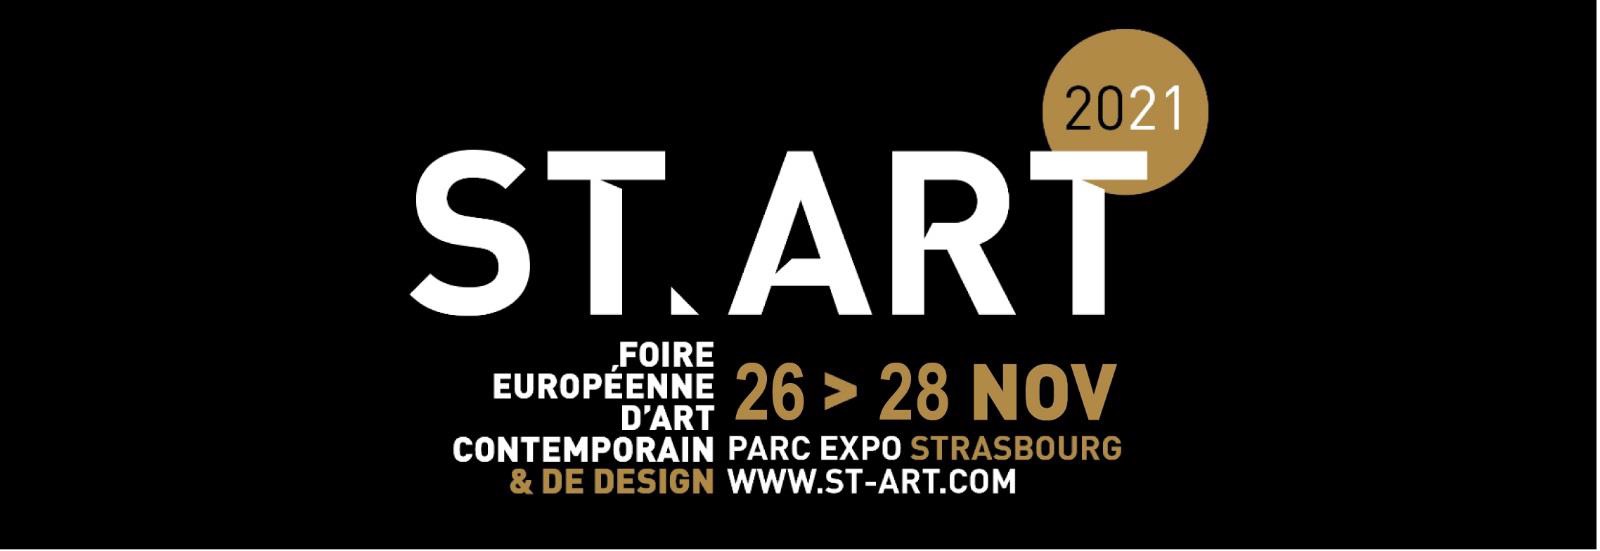 START 2021 Foire Européenne d'Art contemporain et de Design